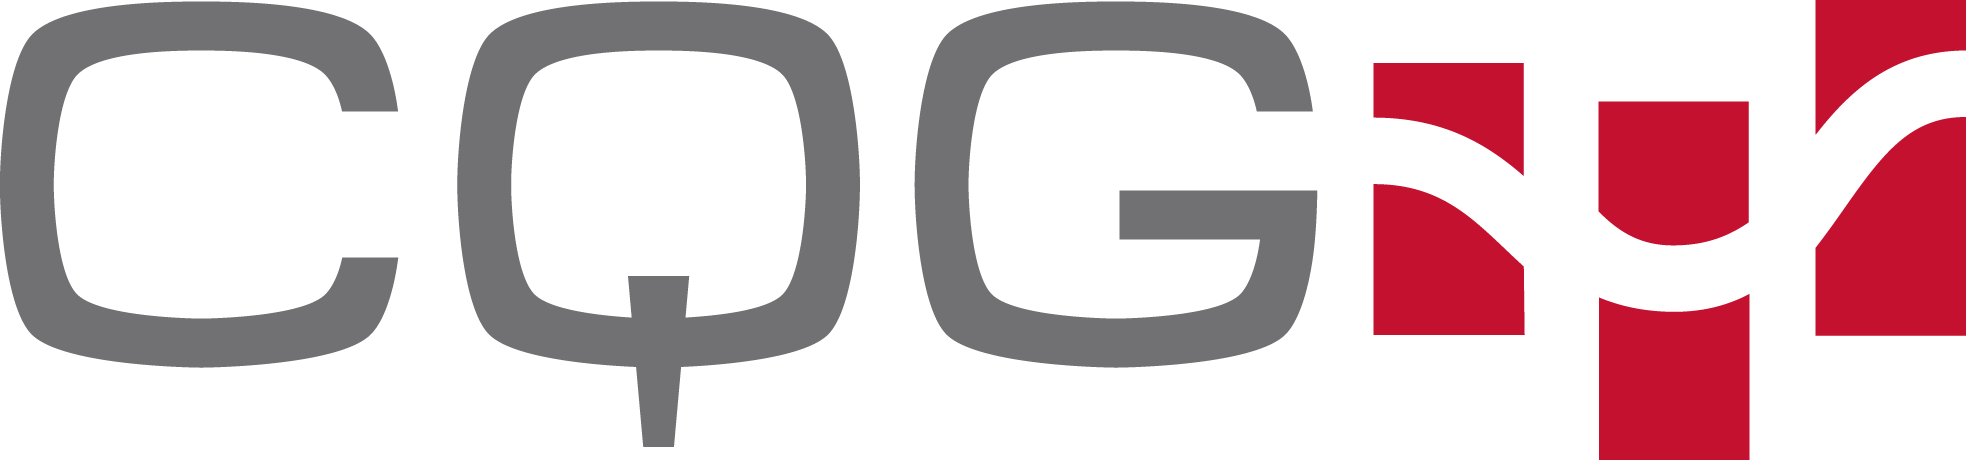 cqg_logo_color_gray